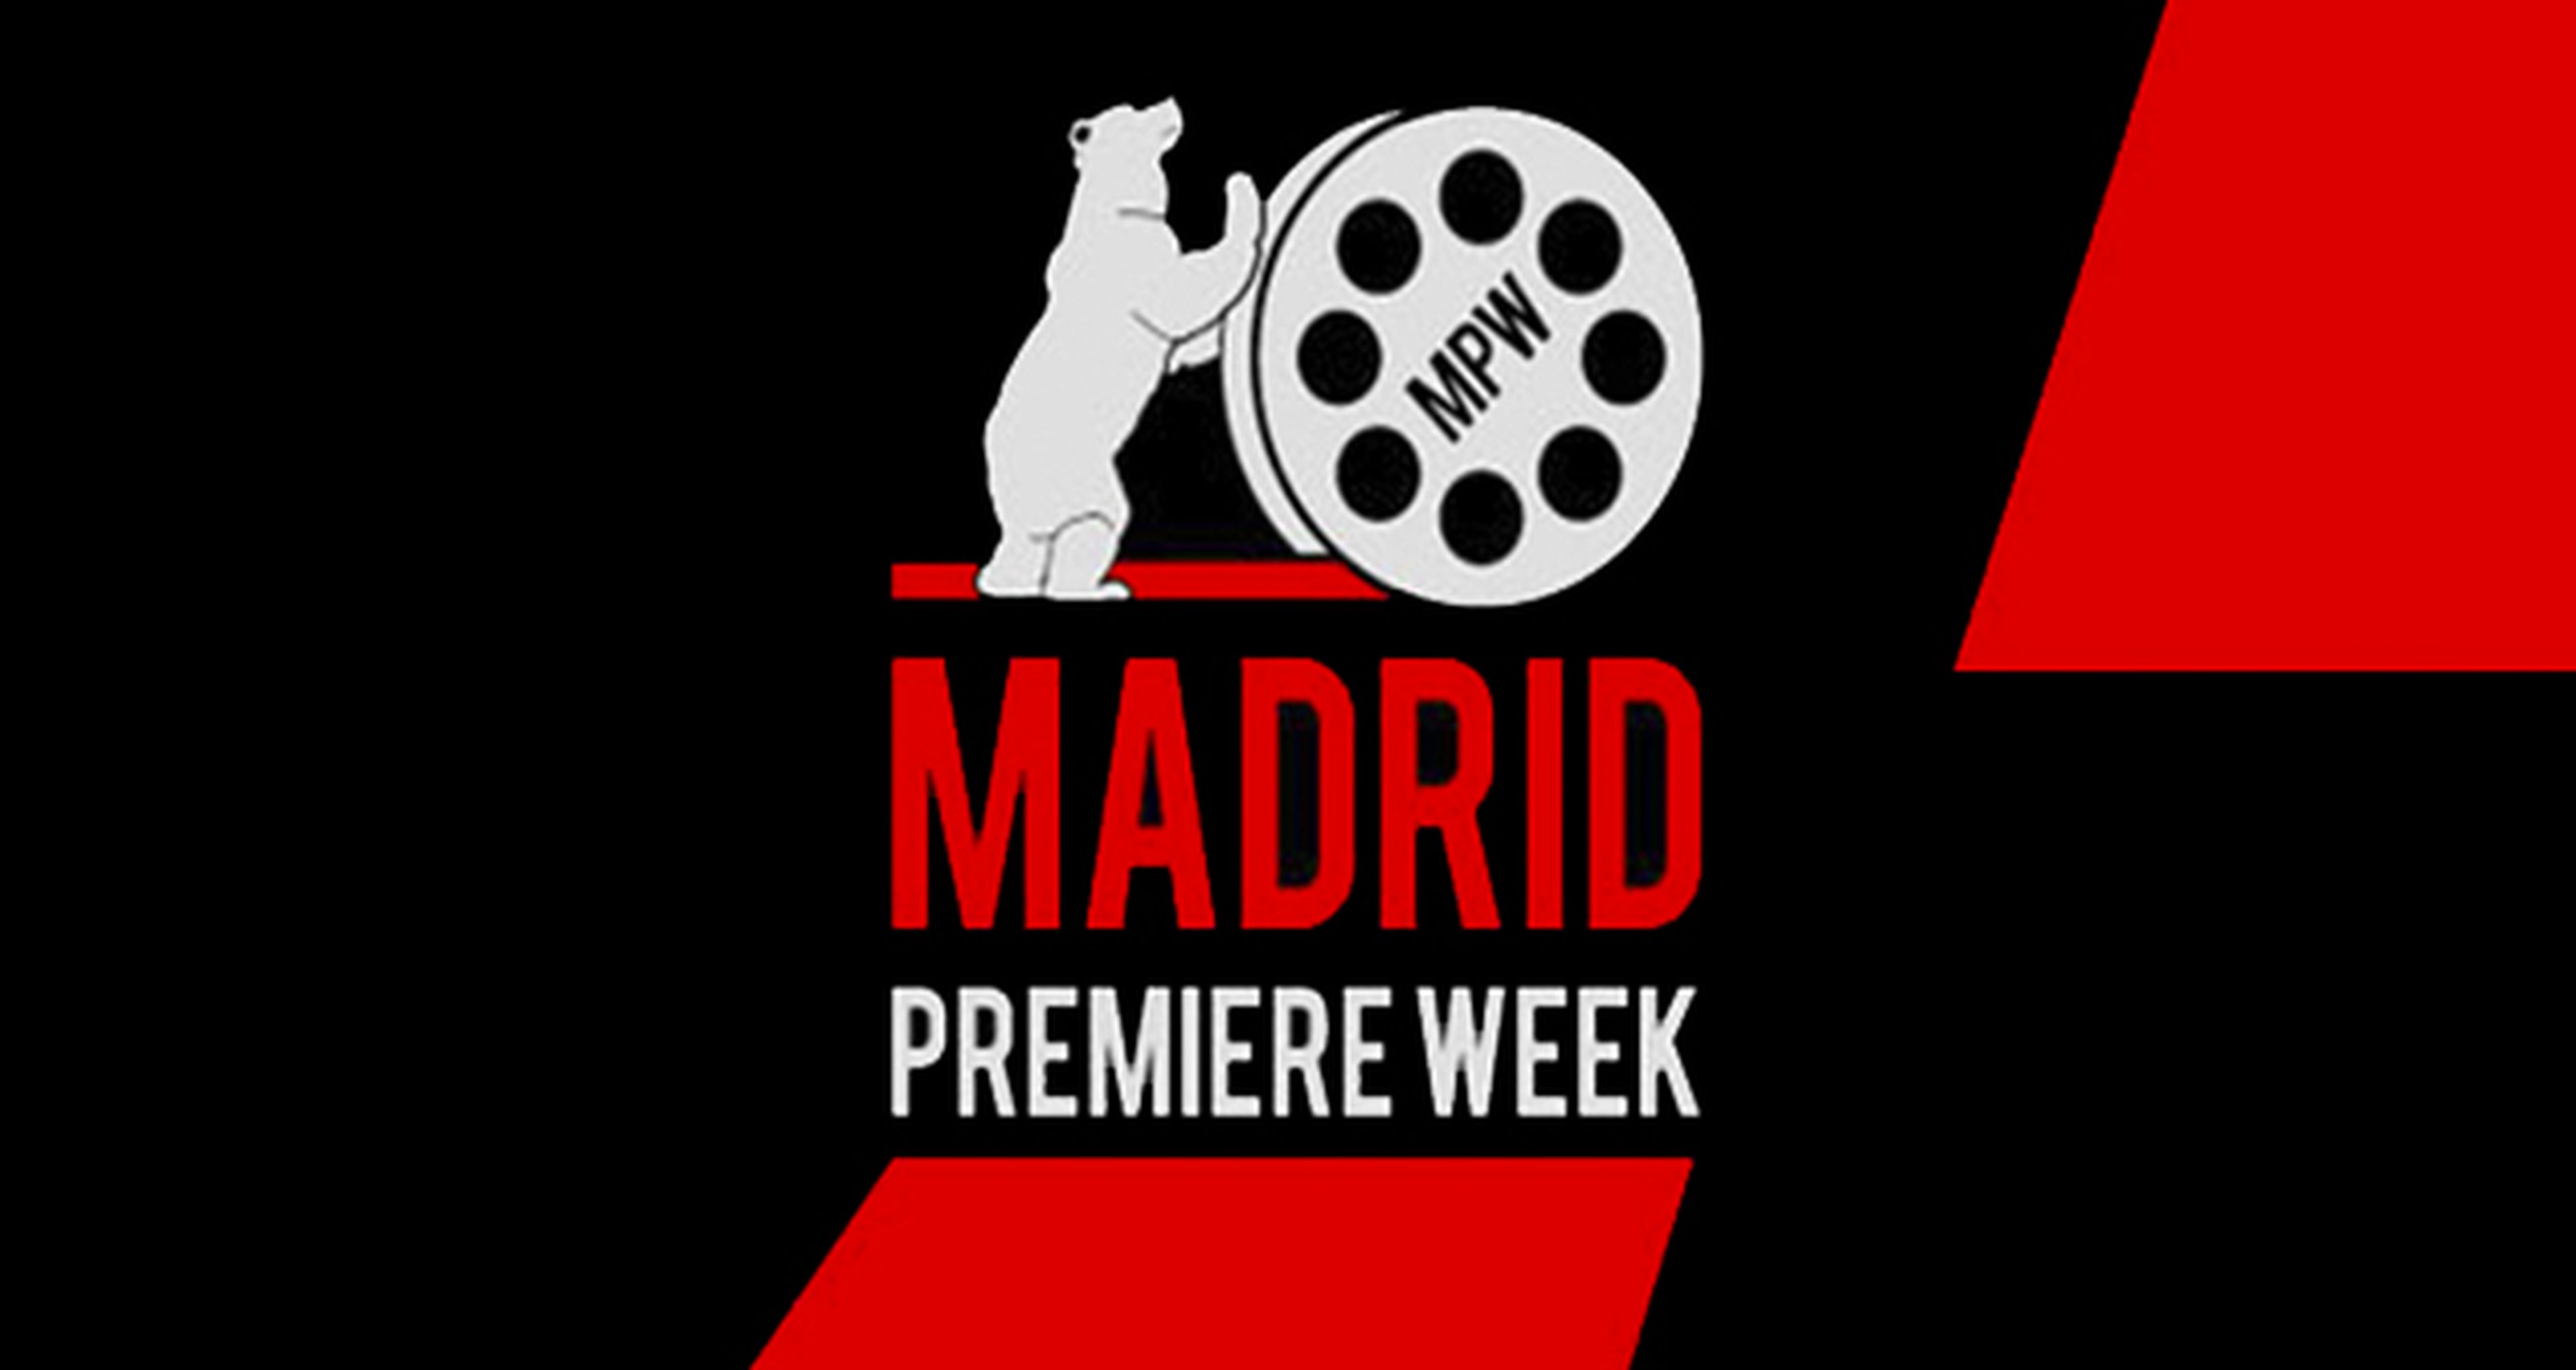 Cine de estreno en Madrid Premiere Week 2014